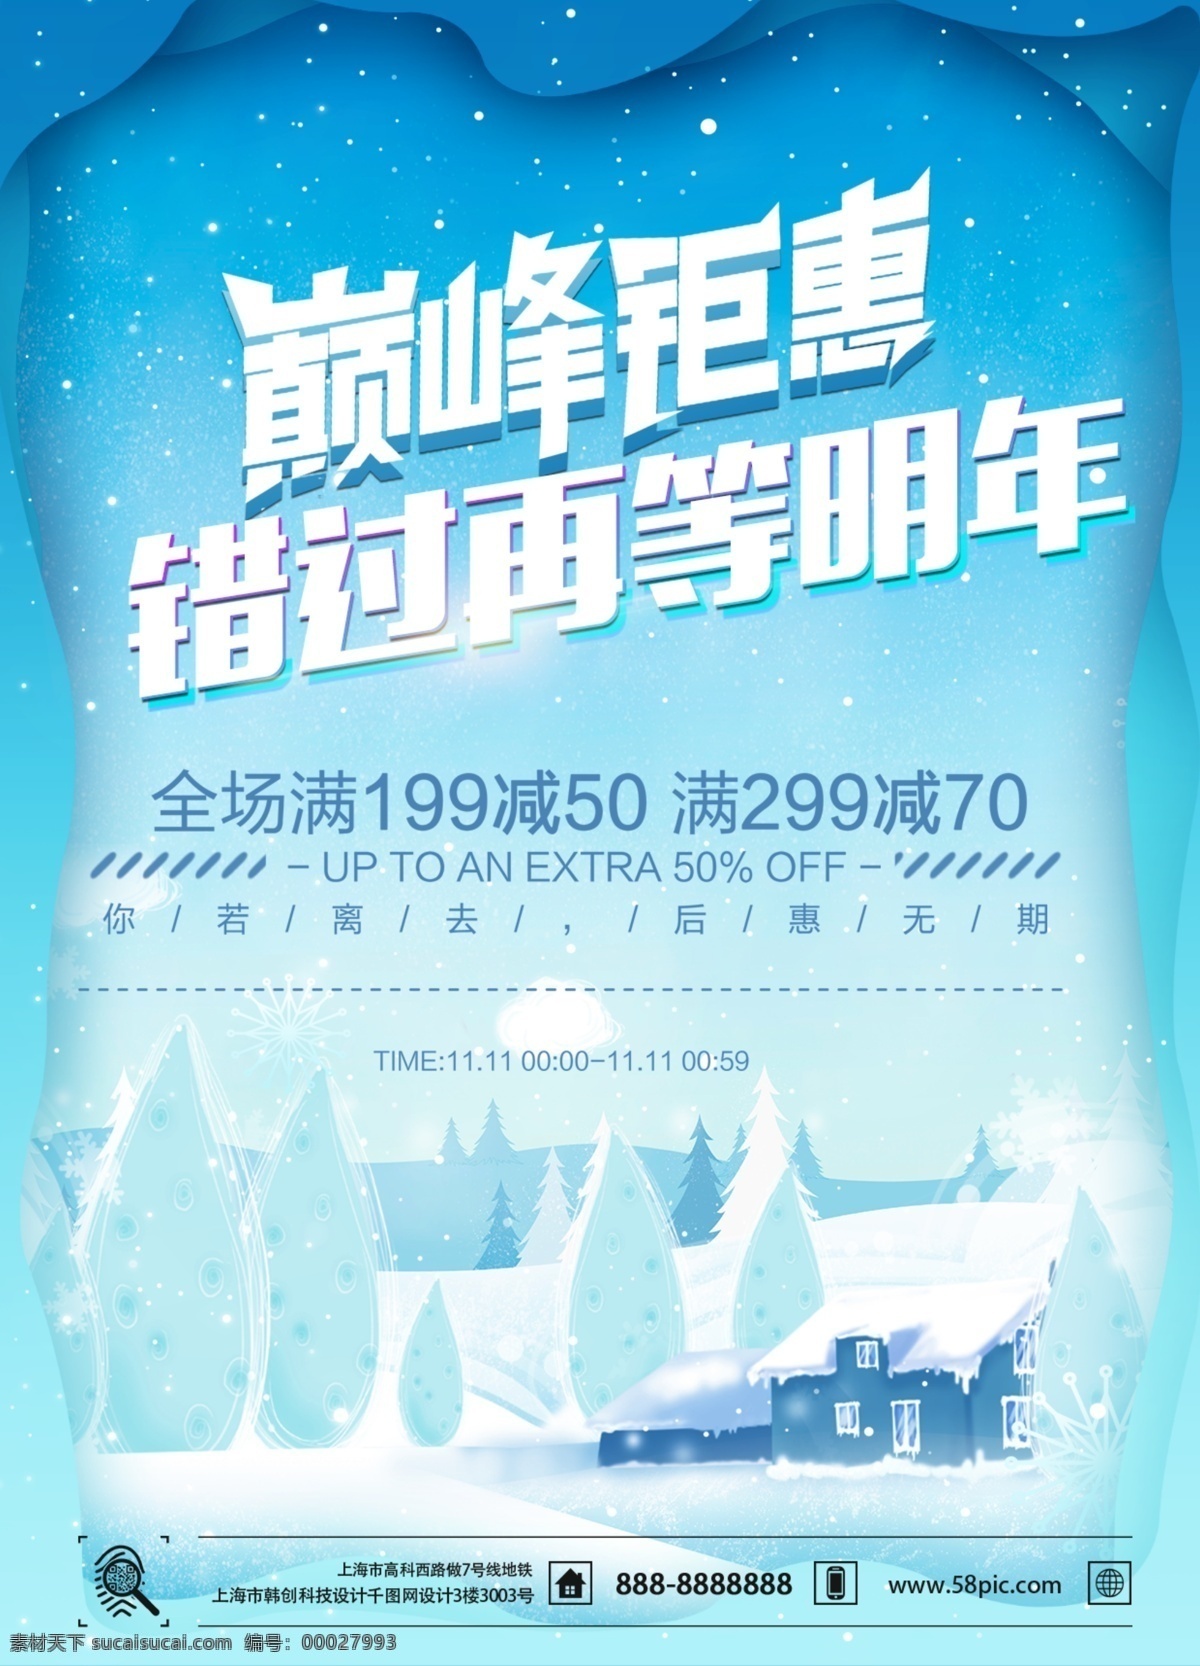 简约 风 蓝色 冬季 促销活动 dm 宣传单 页 模板 雪花 创意 房子 背景 海报